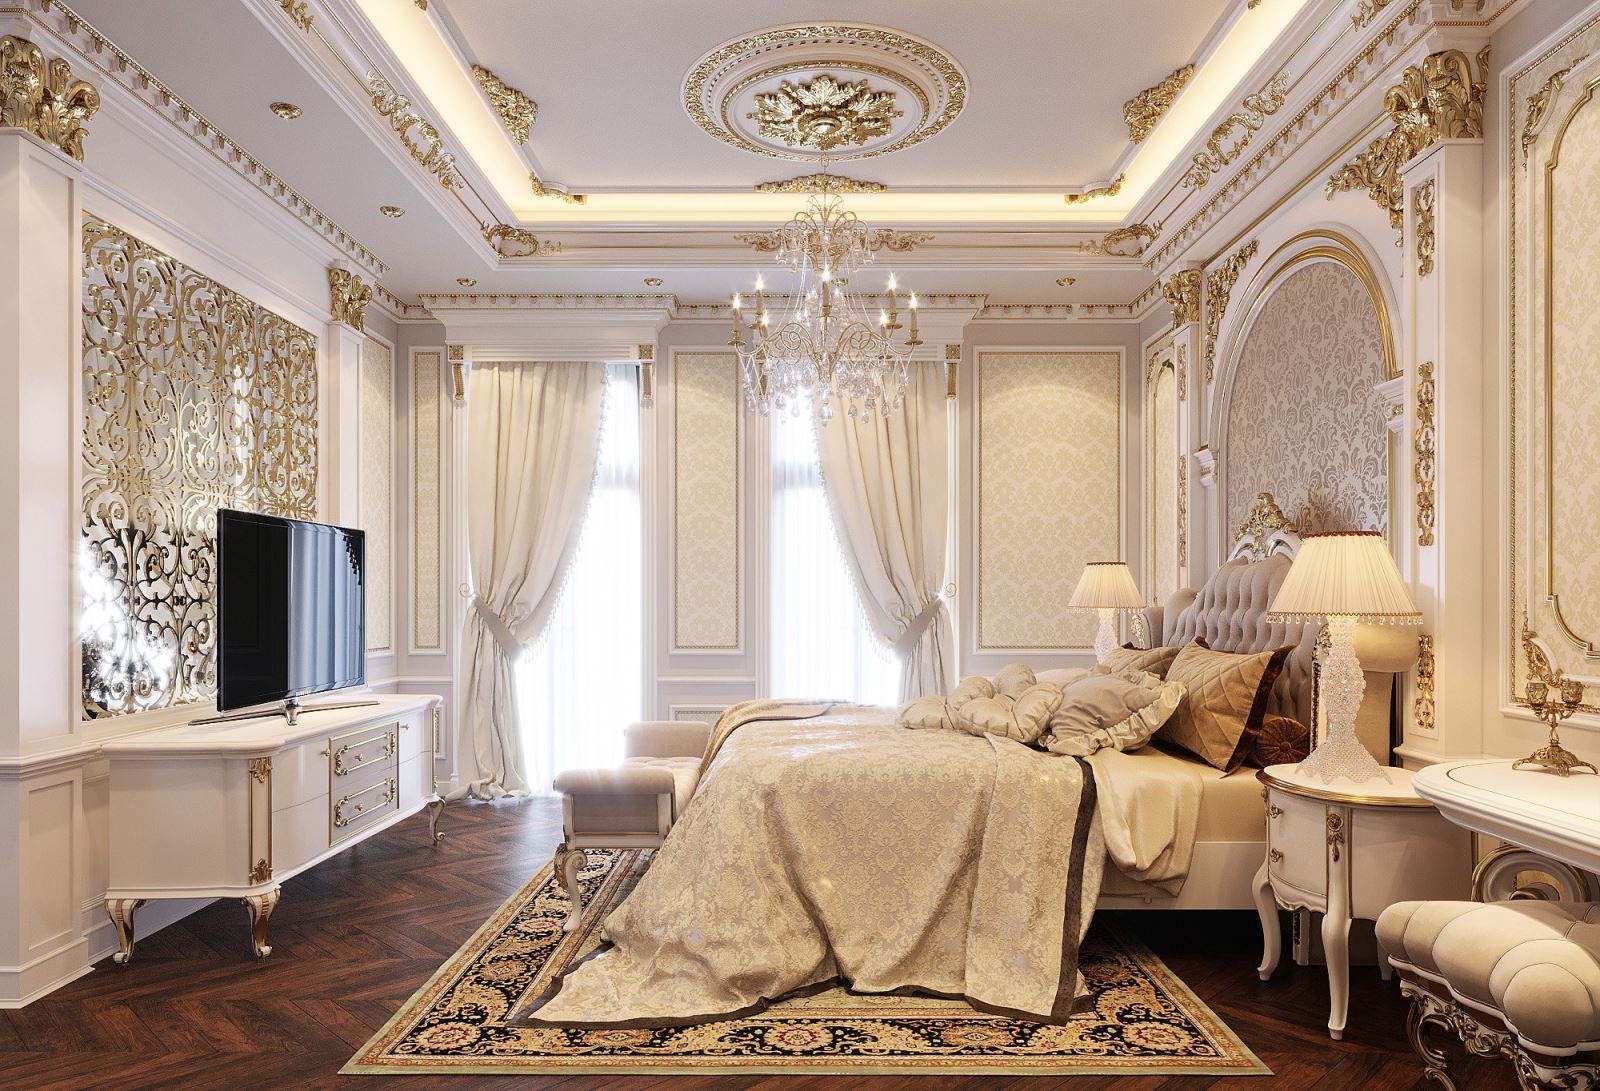 Rèm vải tạo nên sự cao cấp, sang trọng và không gian riêng biệt cho ngôi biệt thự cổ điển